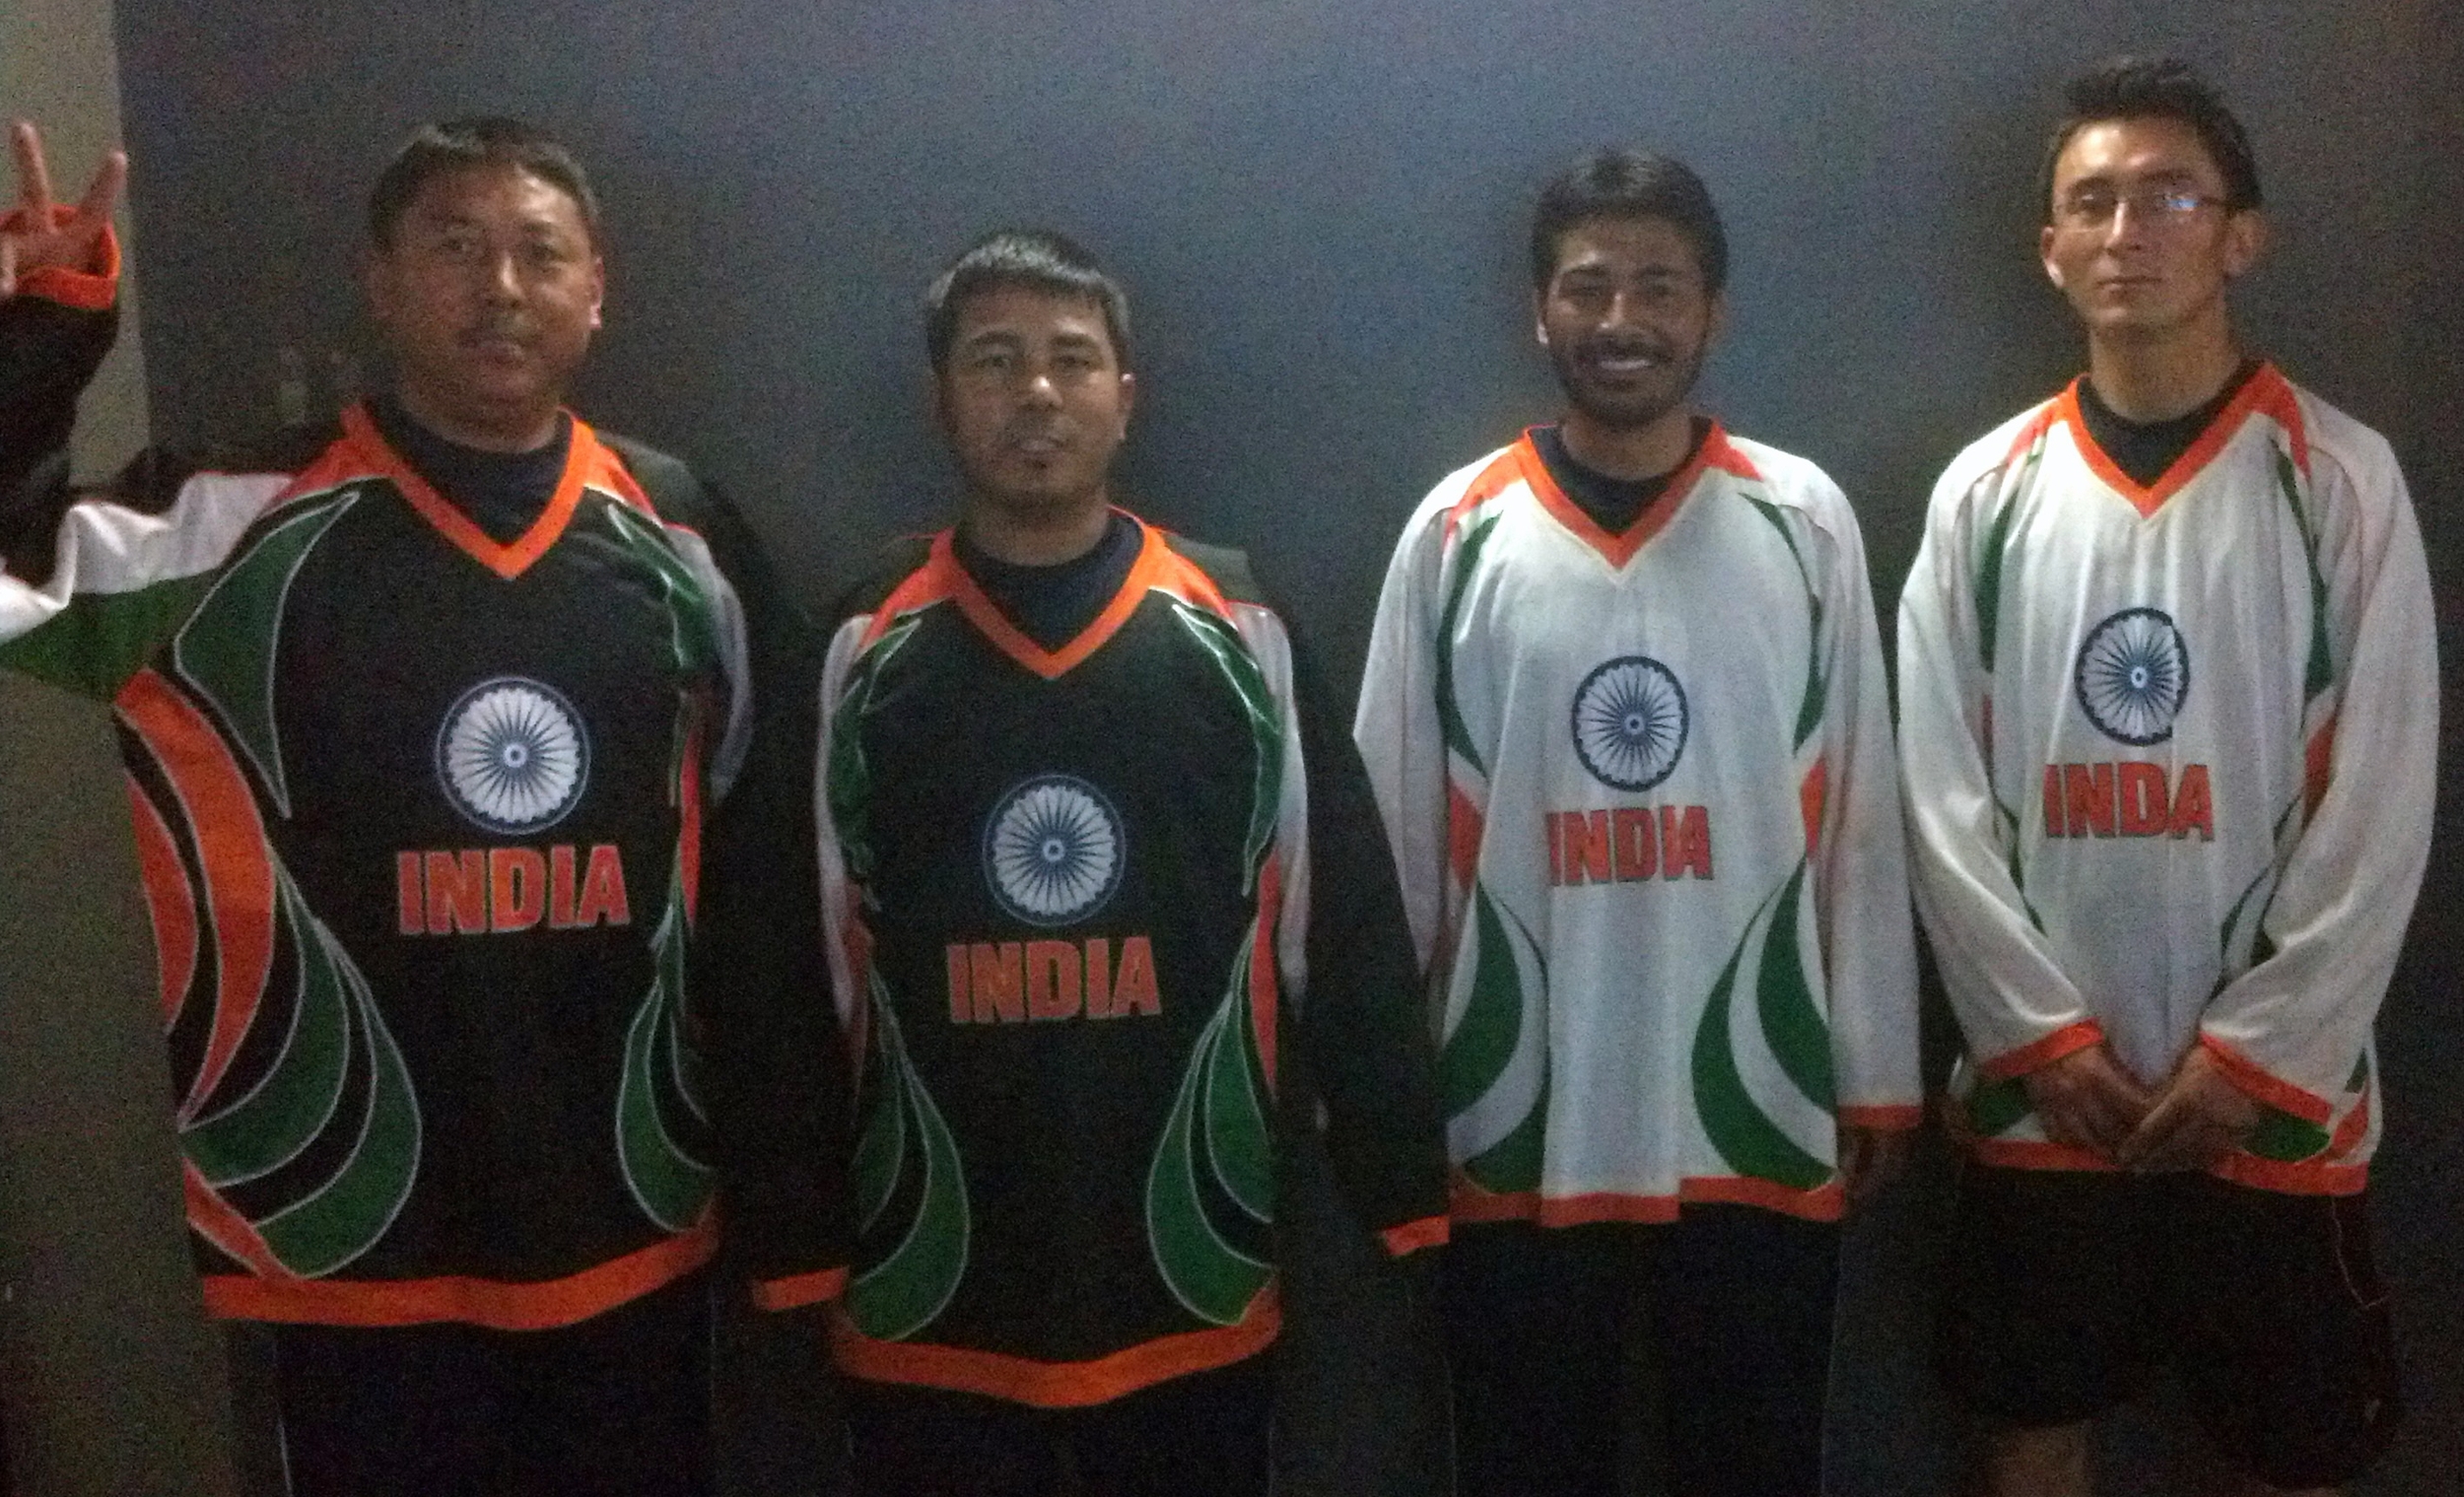 ice hockey jersey india